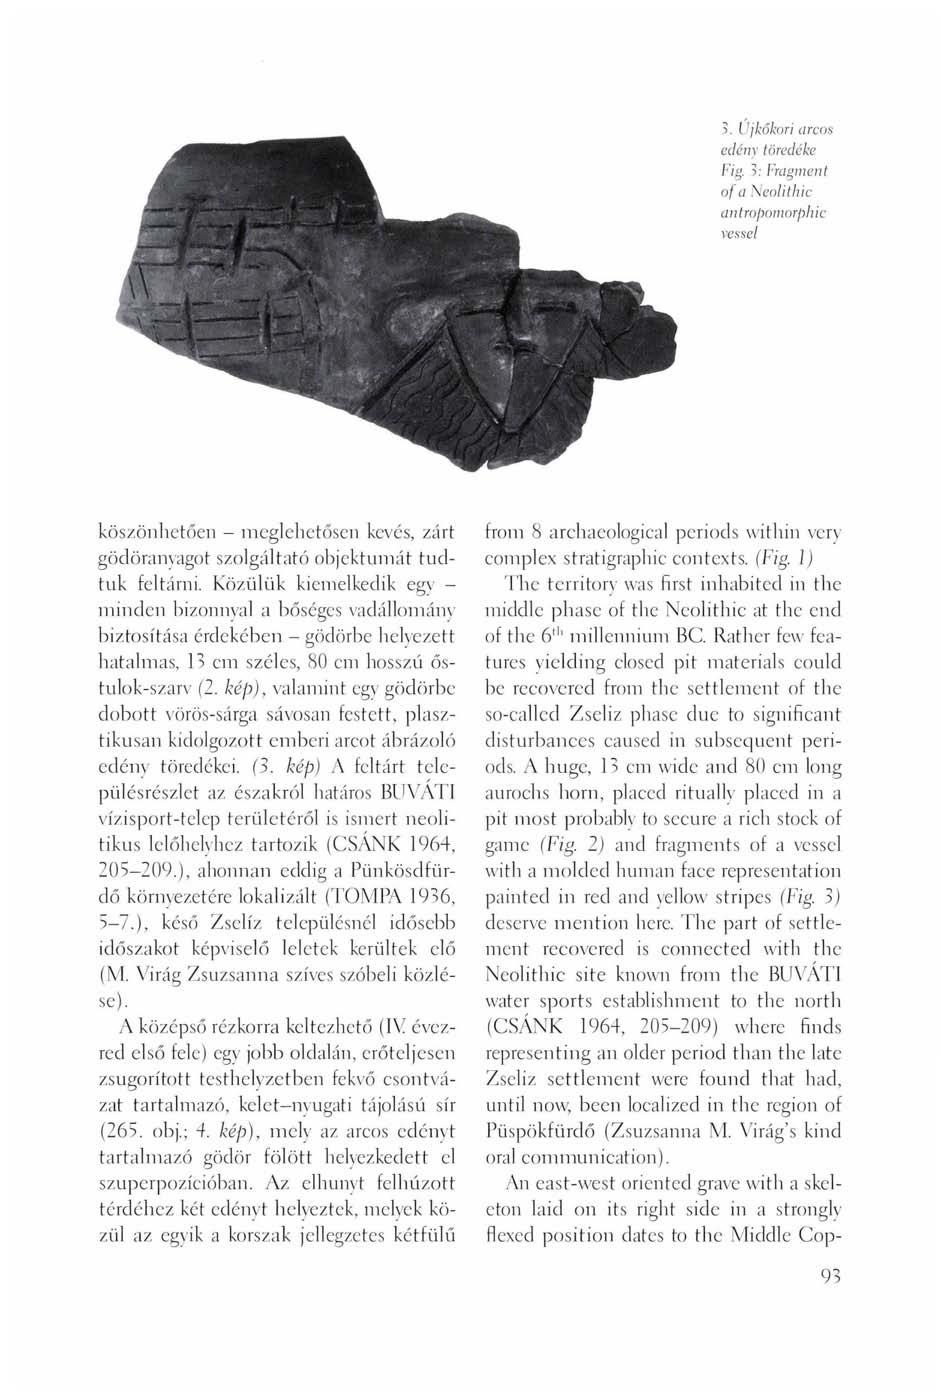 5. Üjkőkori arcos edény töredéke Fig. 3: Fragment of a Neolithic antropomorphic vessel köszönhetően - meglehetősen kevés, zárt gödöranyagot szolgáltató objektumát tudtuk feltárni.